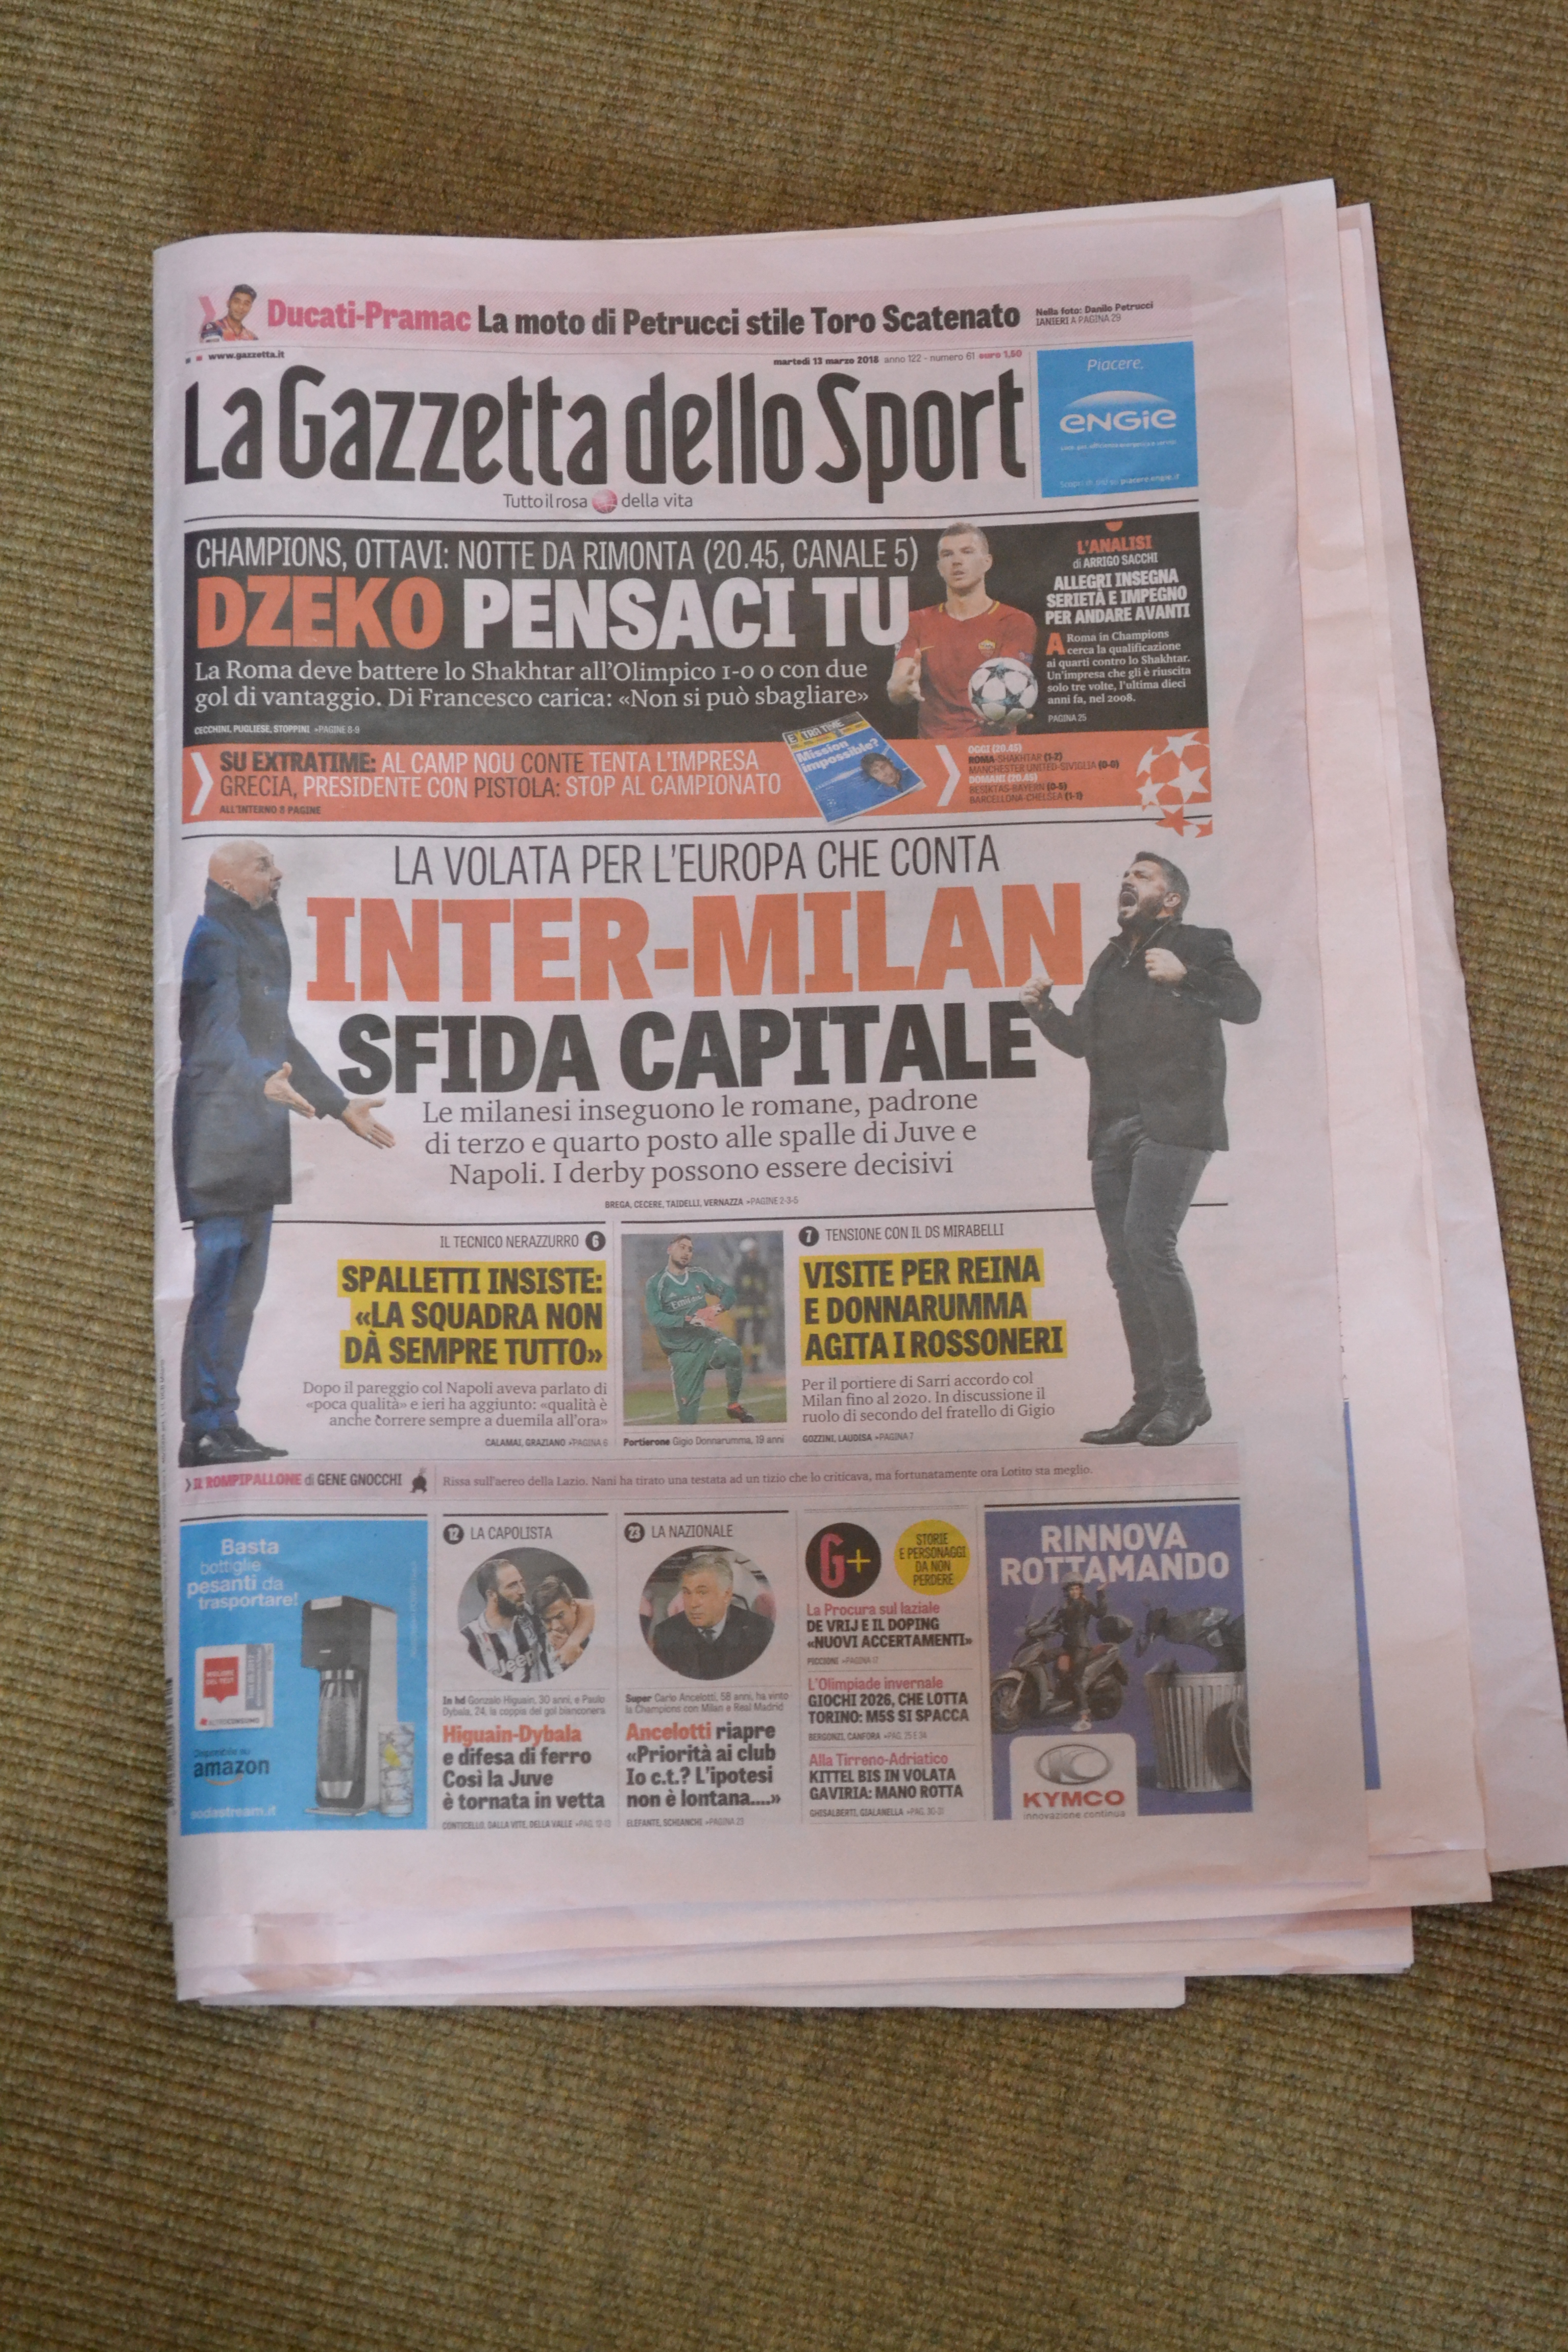 Джеко как мессия: о чем пишут итальянские СМИ перед игрой "Рома" - "Шахтер" - изображение 1